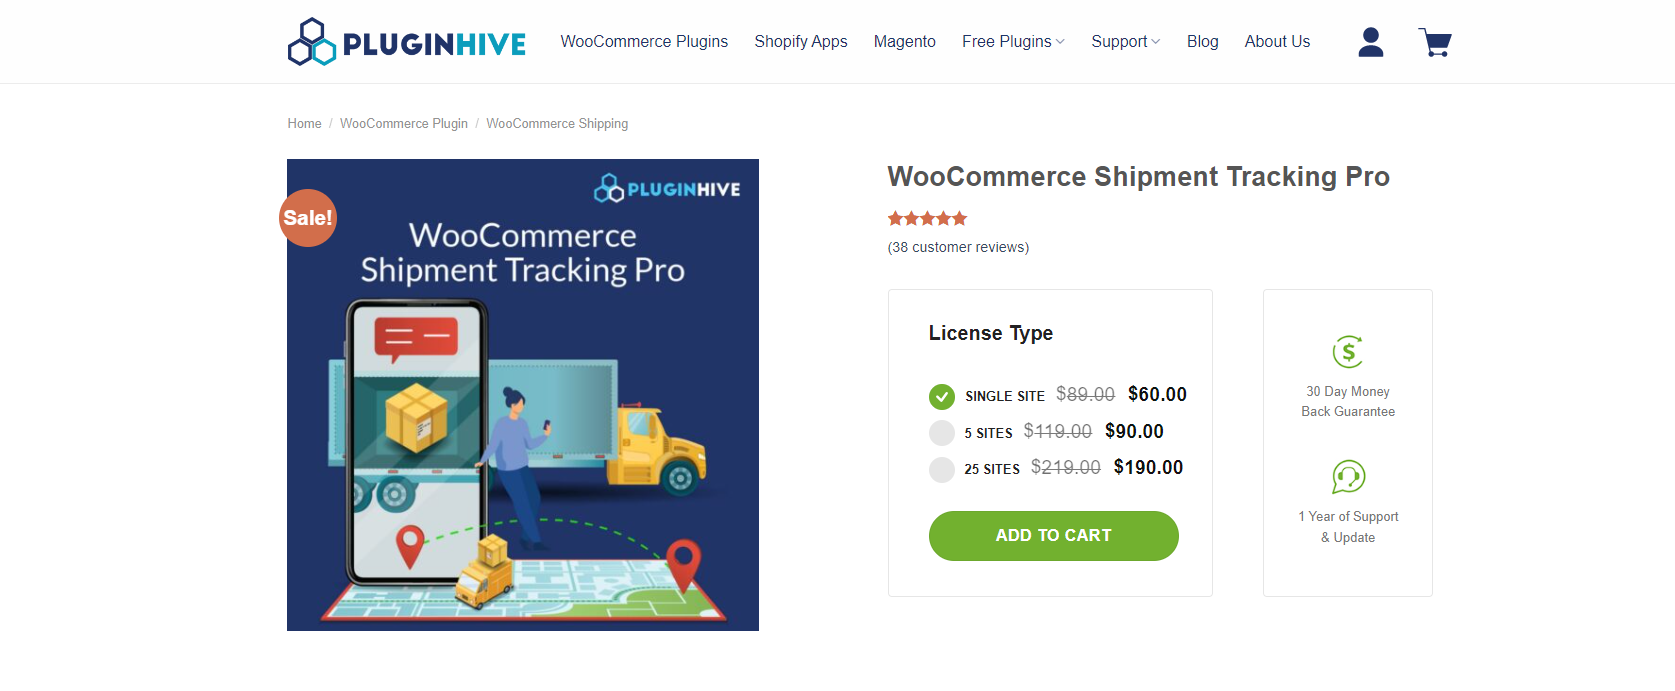 WooCommerce Shipment Tracking Pro